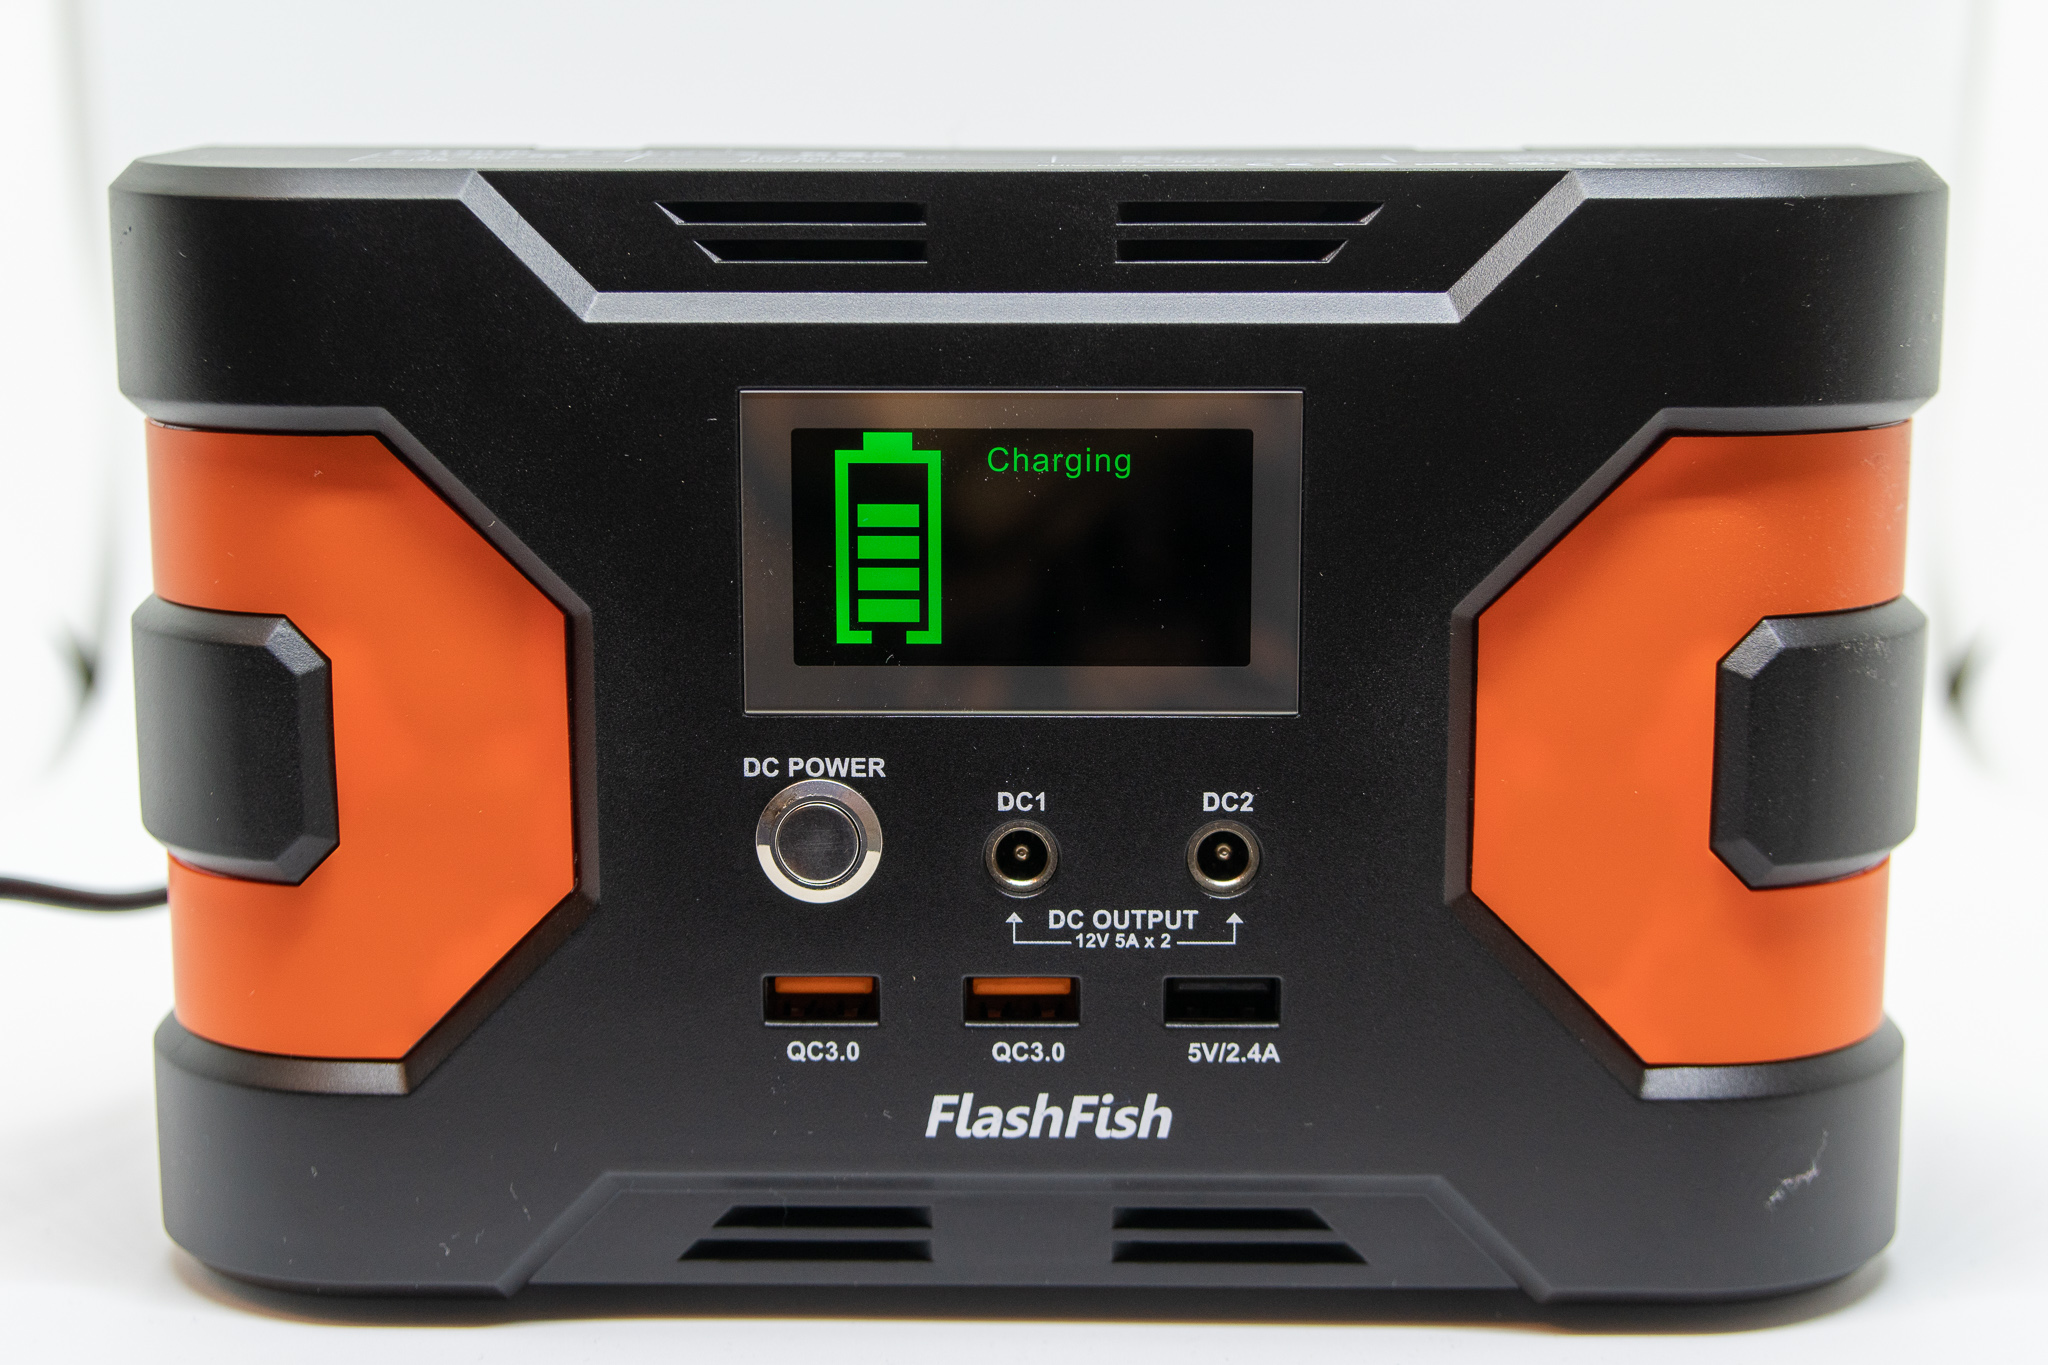 レビュー停電でも安心。災害時に役立つポータブルバッテリー FlashFish(45000mAh) – 旅行好きの大阪人ブログ